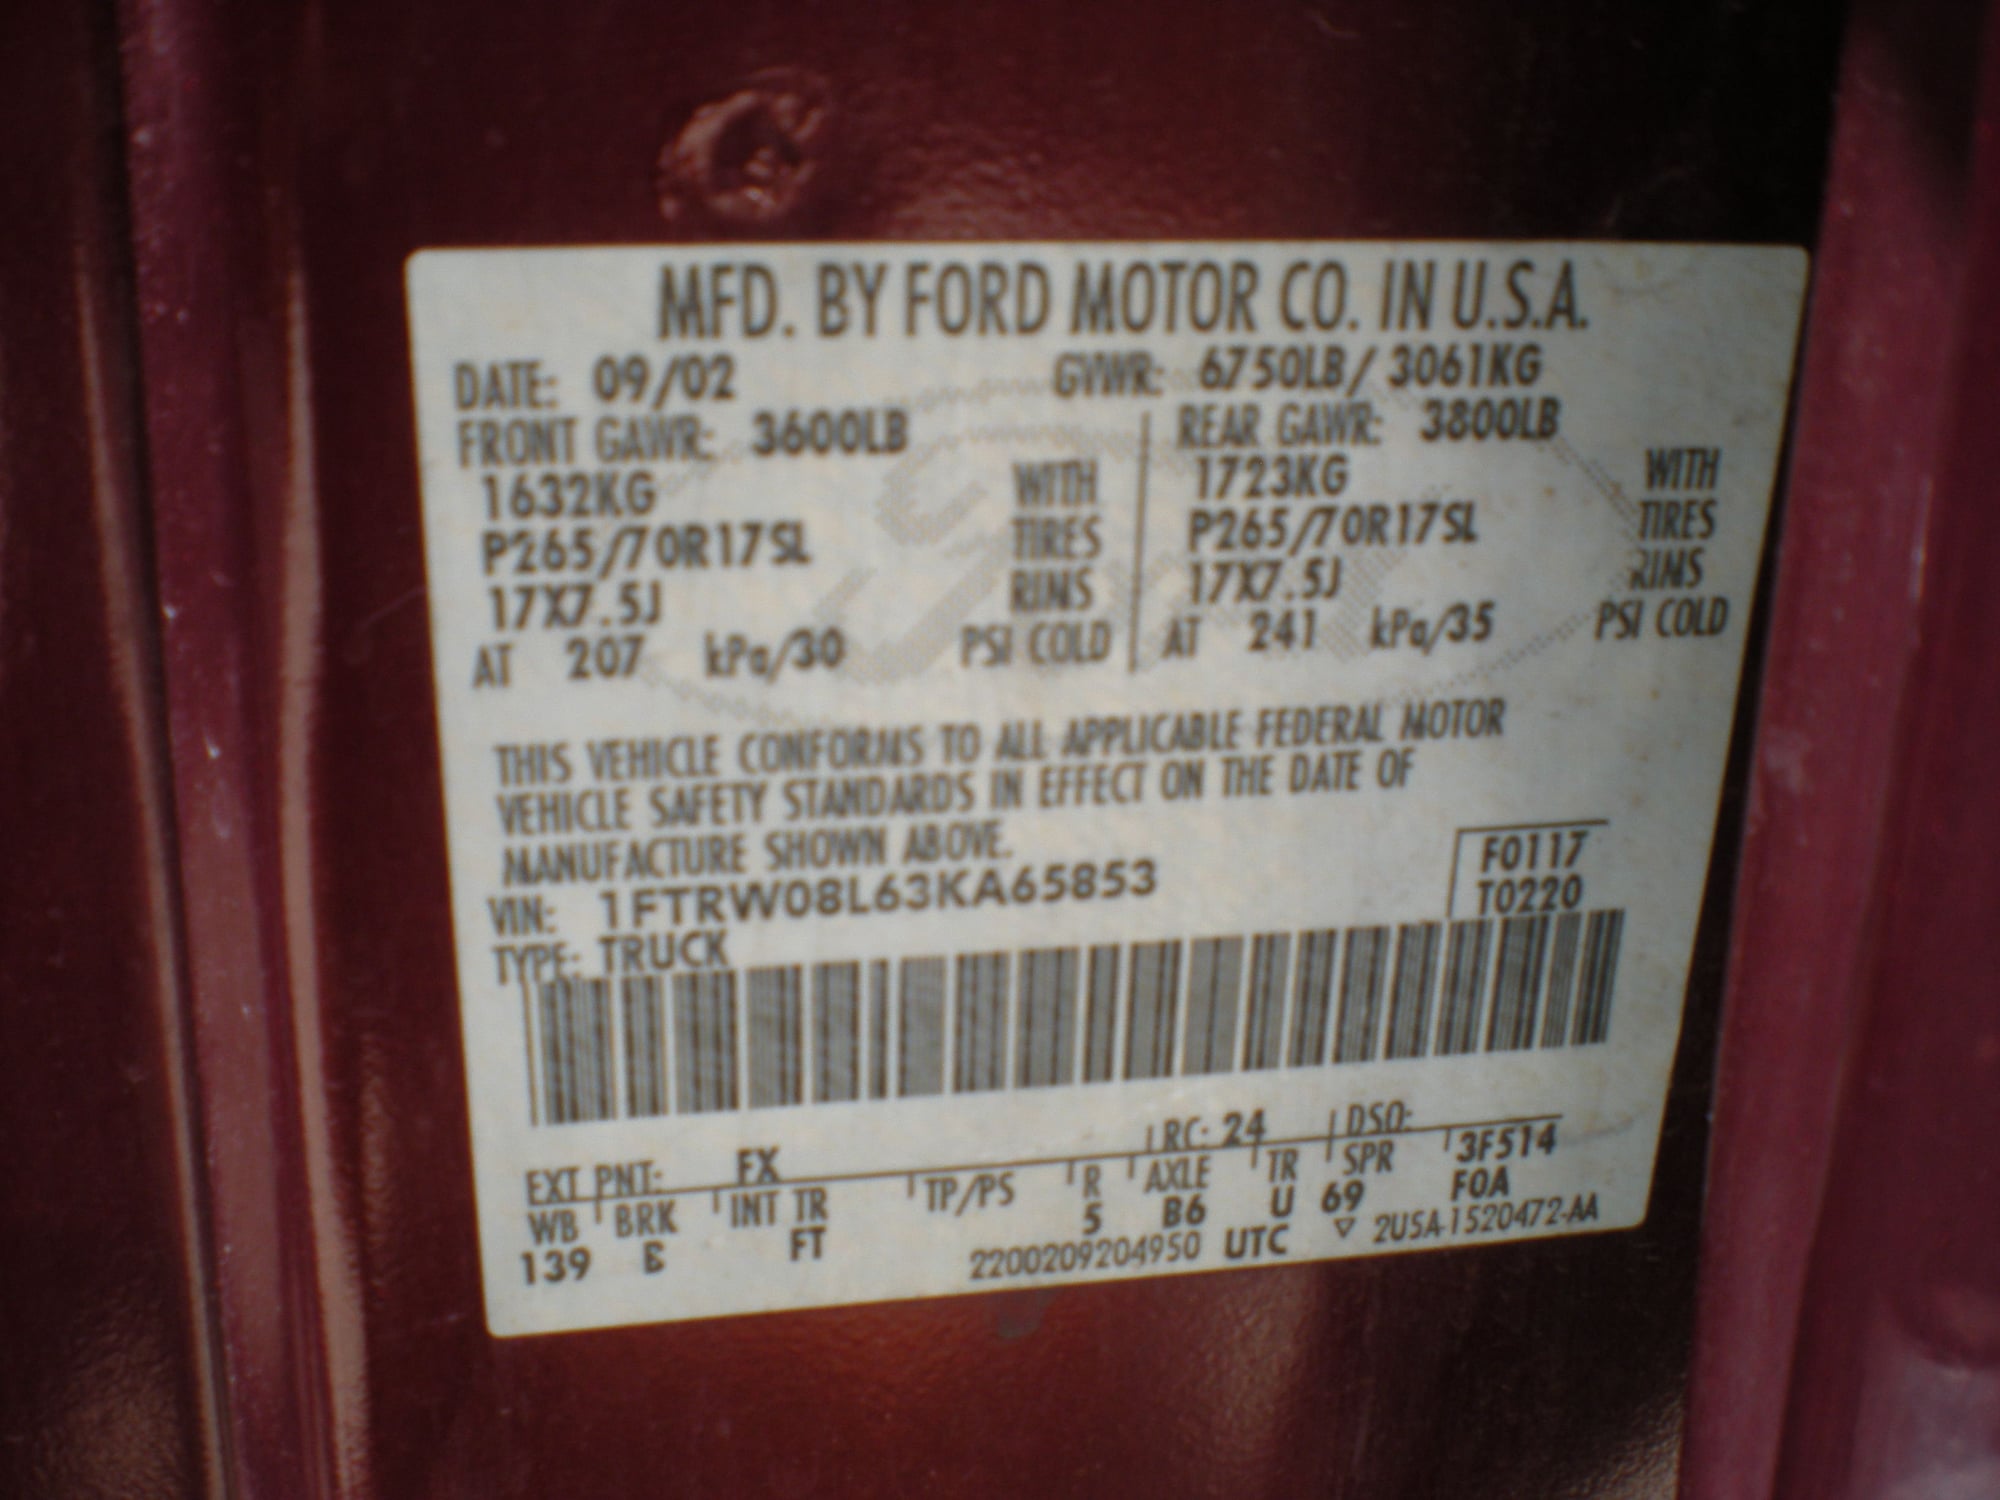 2003 Ford F-150 - 2003 F150 4x4 Supercrew FX4 - Used - VIN 1FTRW08L63KA65853 - 121,000 Miles - 8 cyl - 4WD - Automatic - Truck - Red - Islamorada, FL 33036, United States